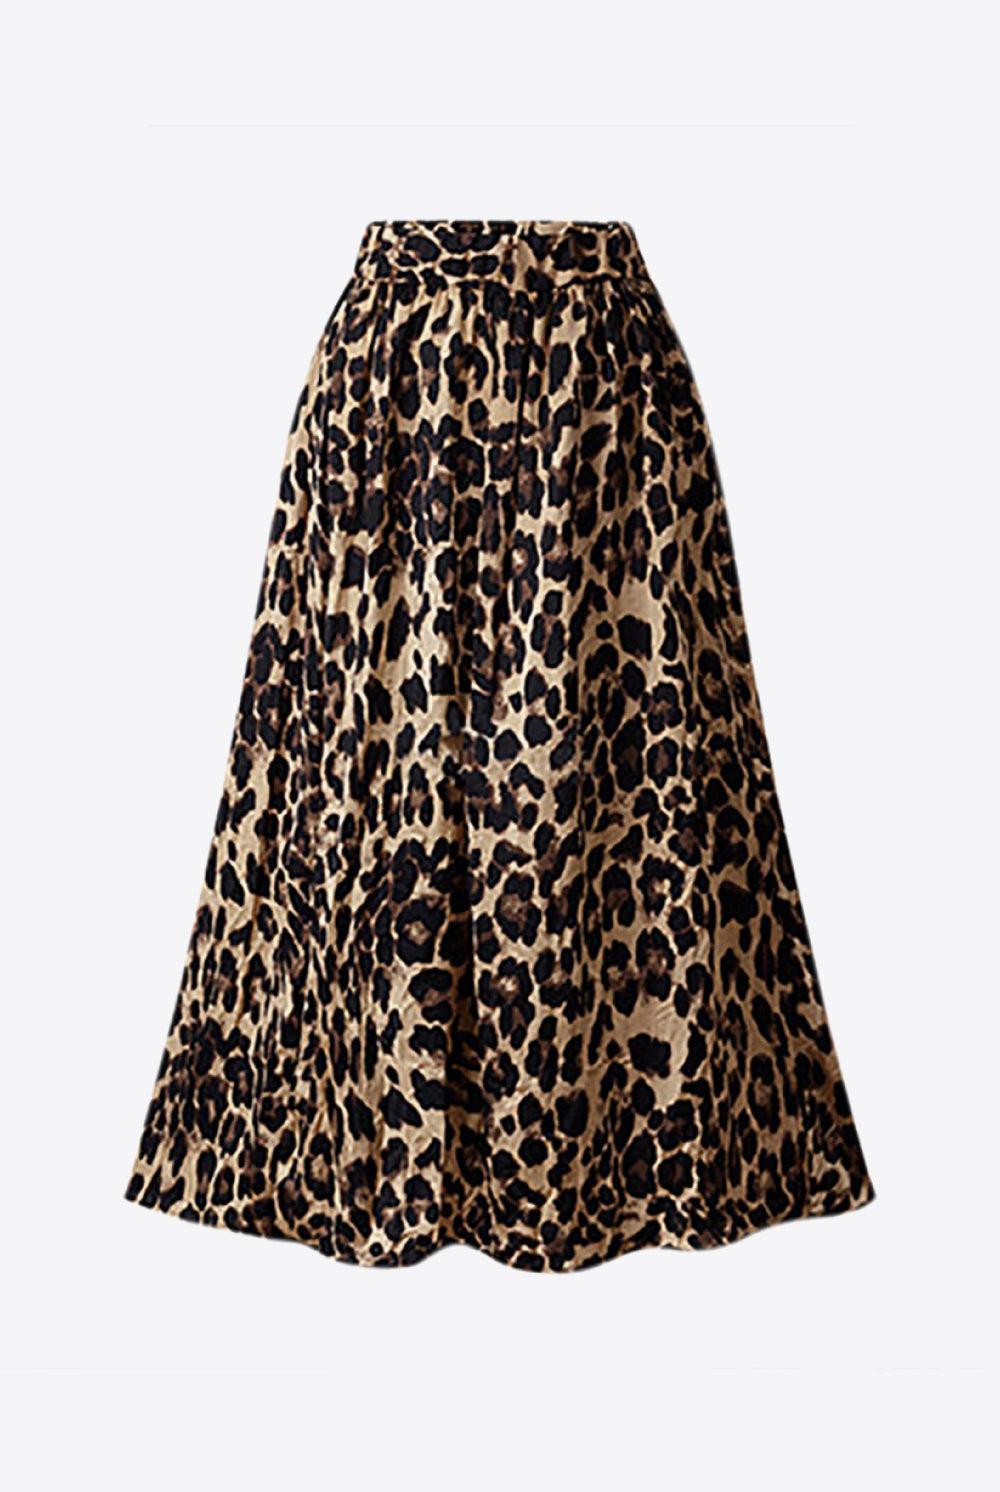 White Smoke Plus Size Leopard Print Midi Skirt Plus Size Clothes